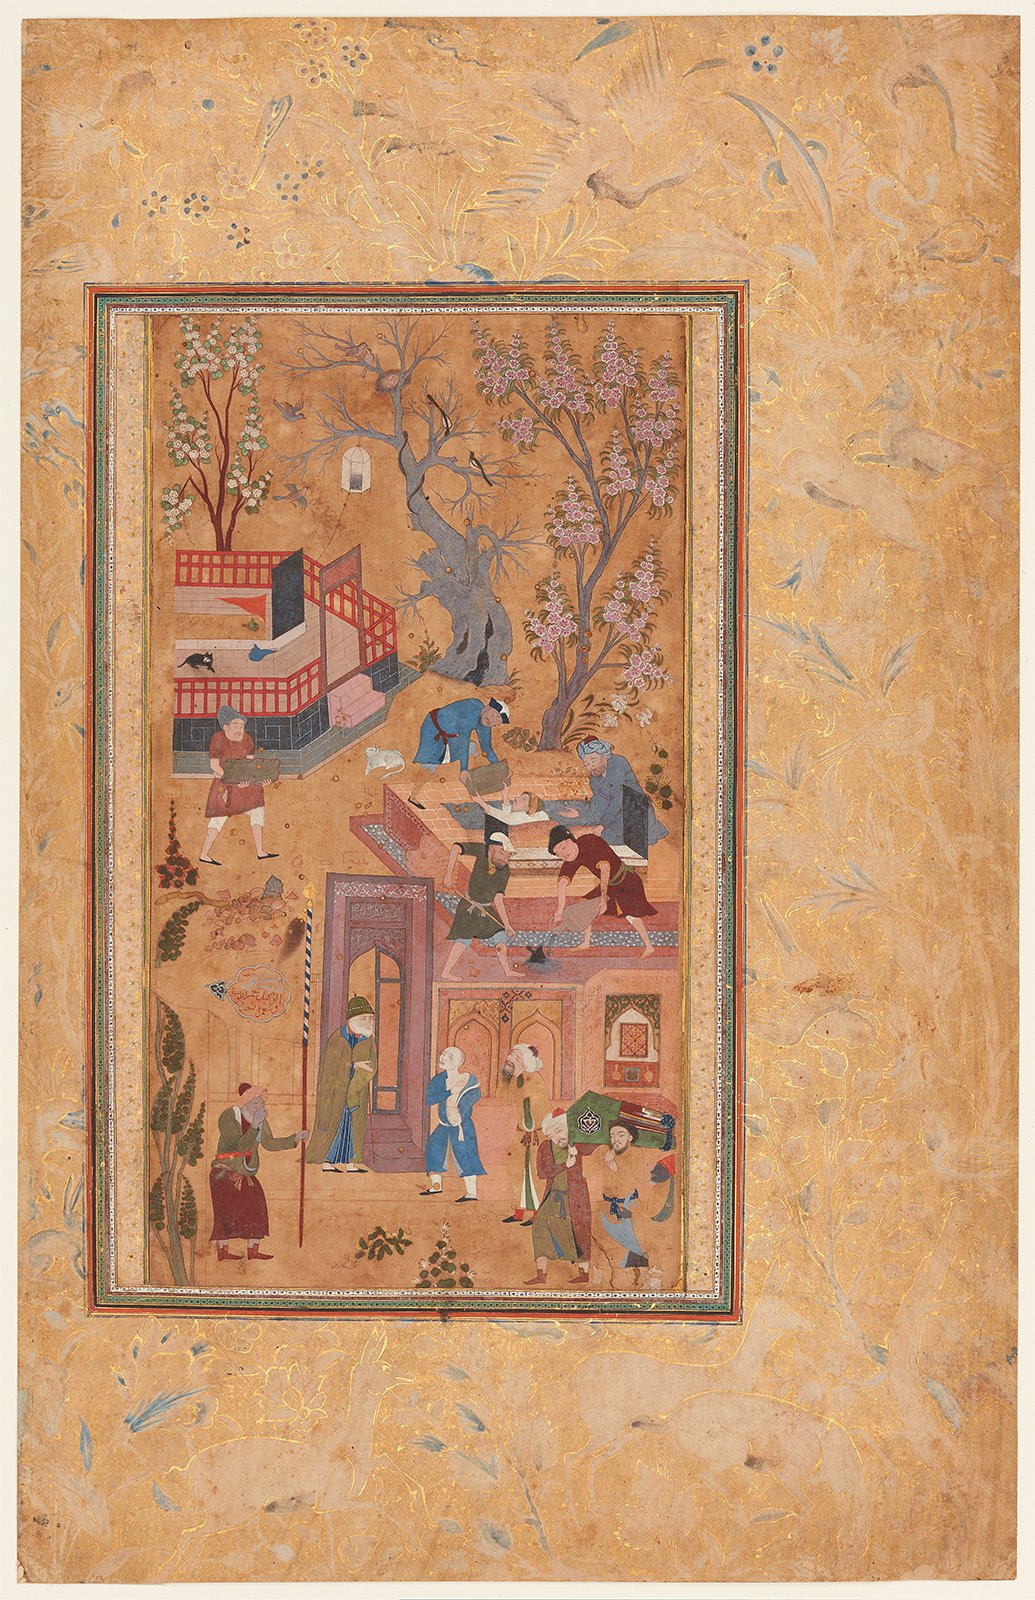 Le Fils qui pleurait son Père by Sahifa Banu (attribution) - Vers 1620 - 22.3 x 12.2 cm 